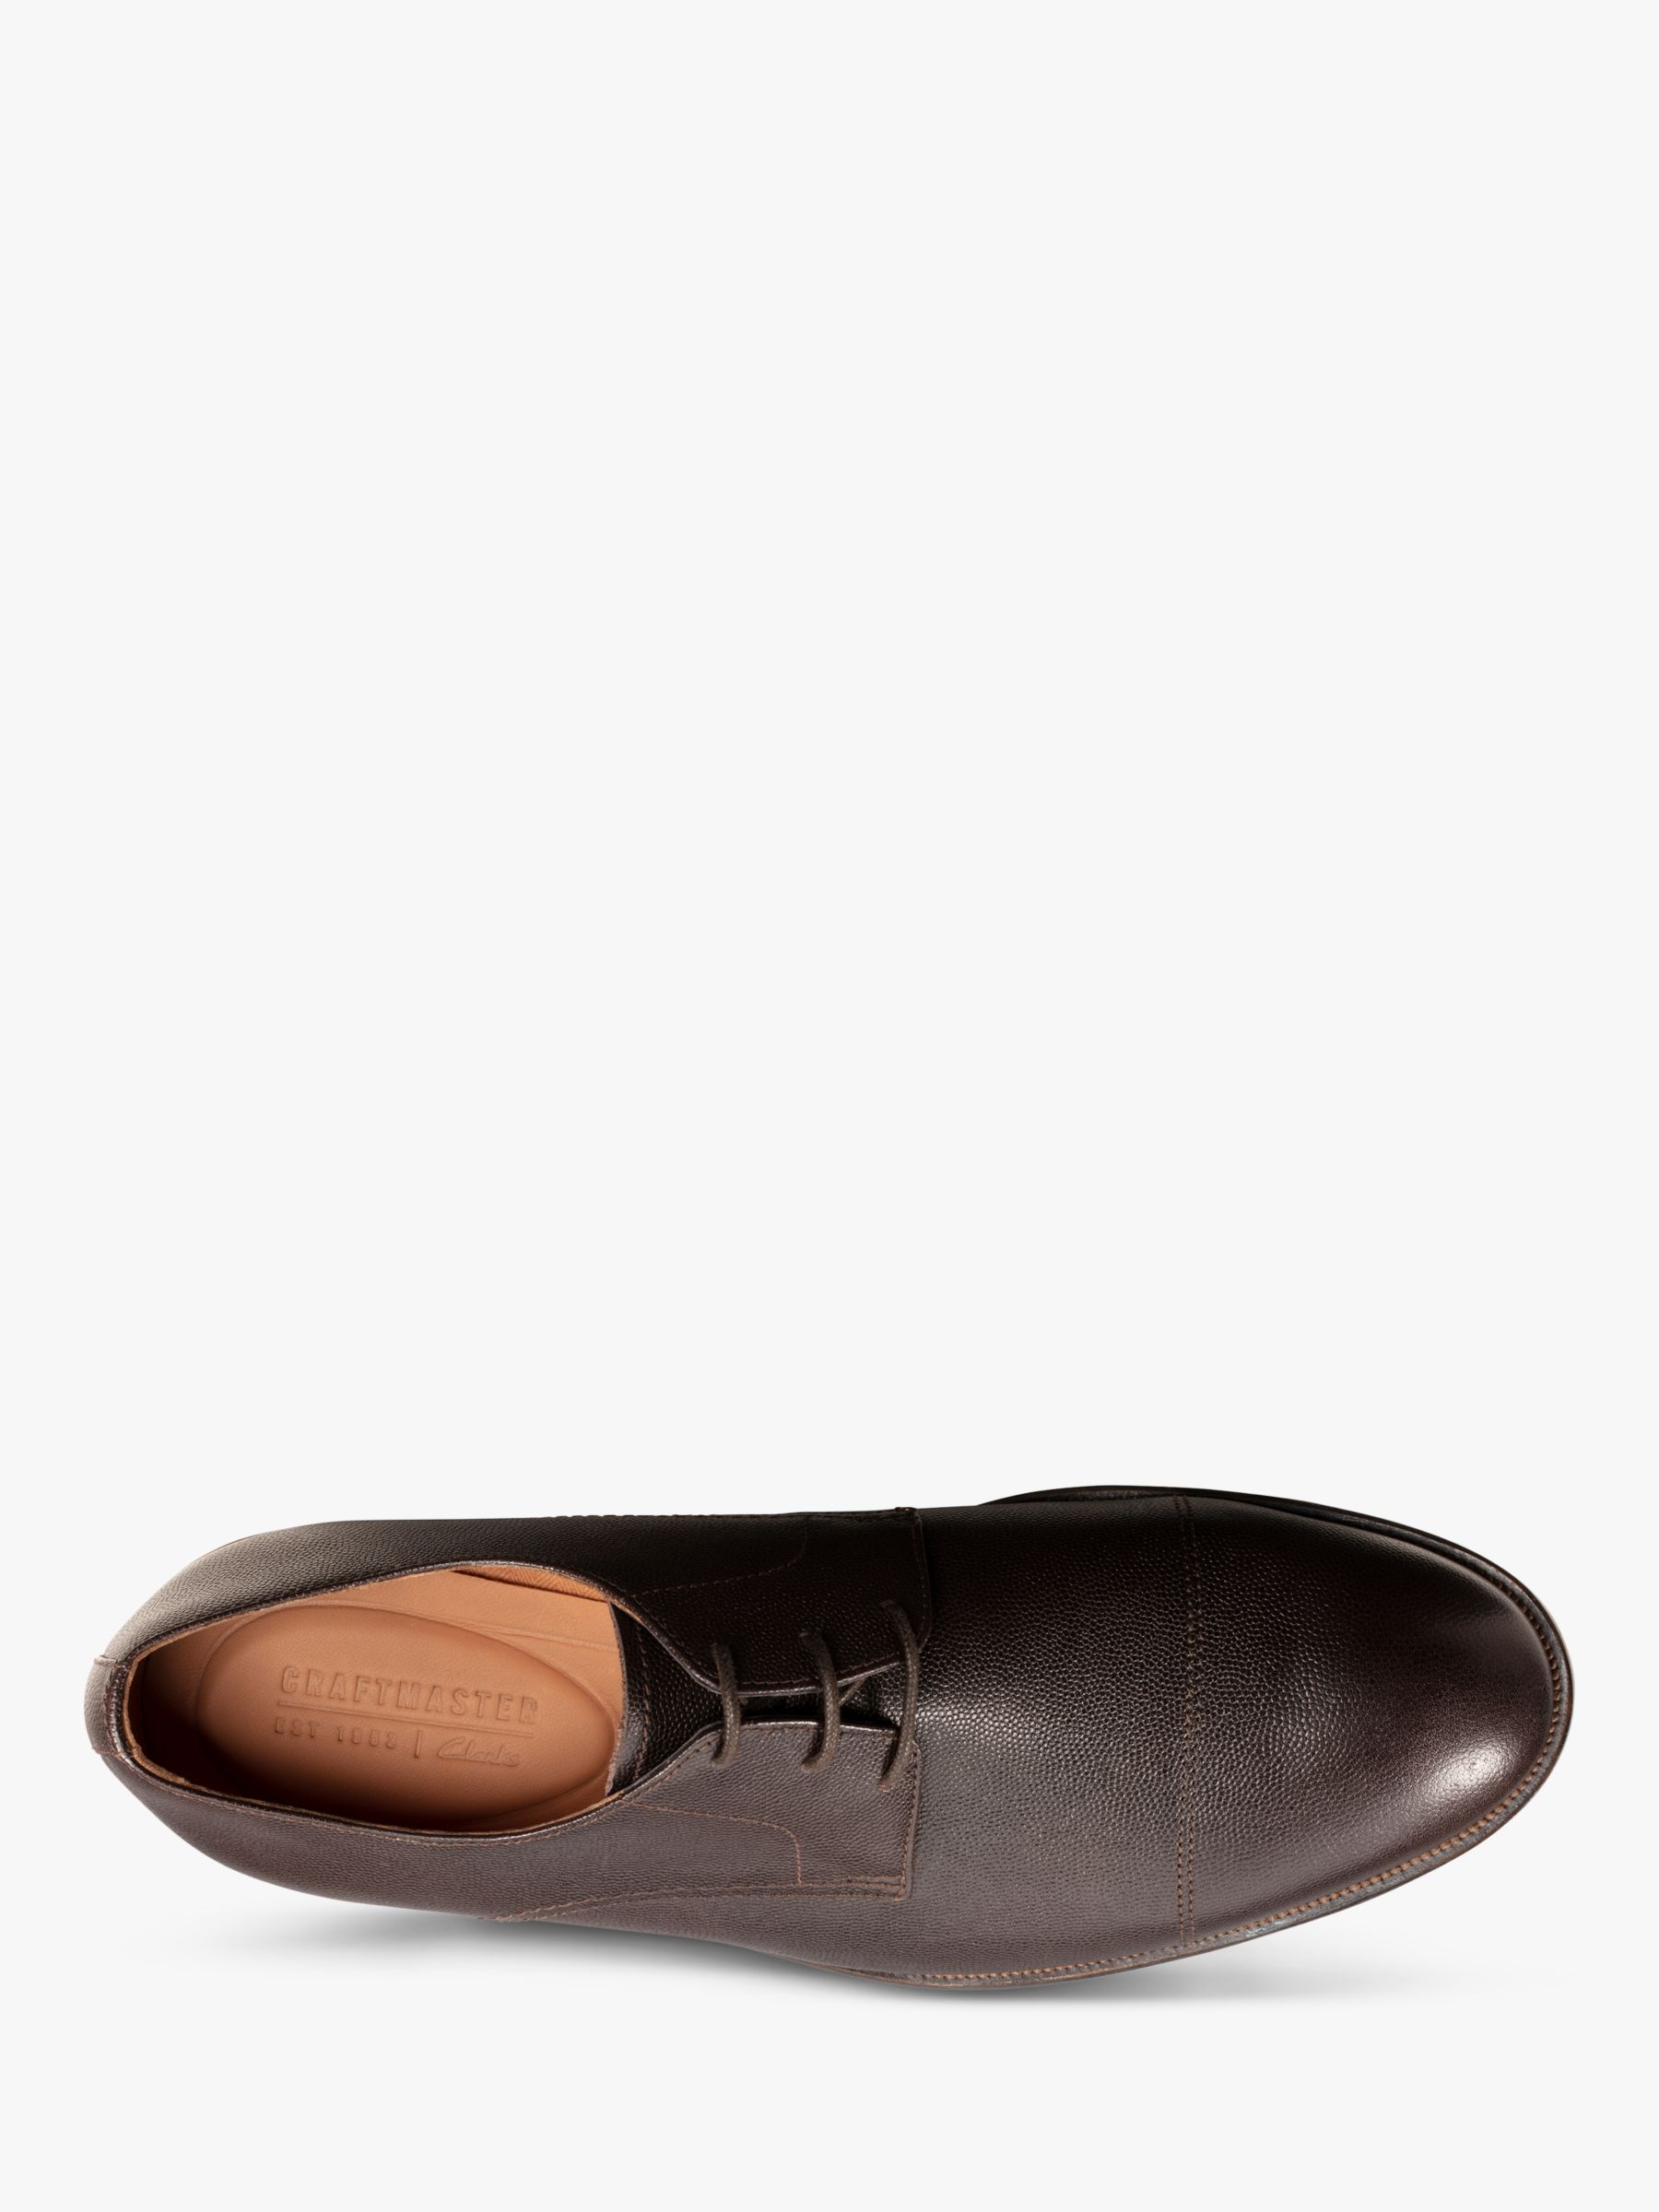 clarks dark brown shoes